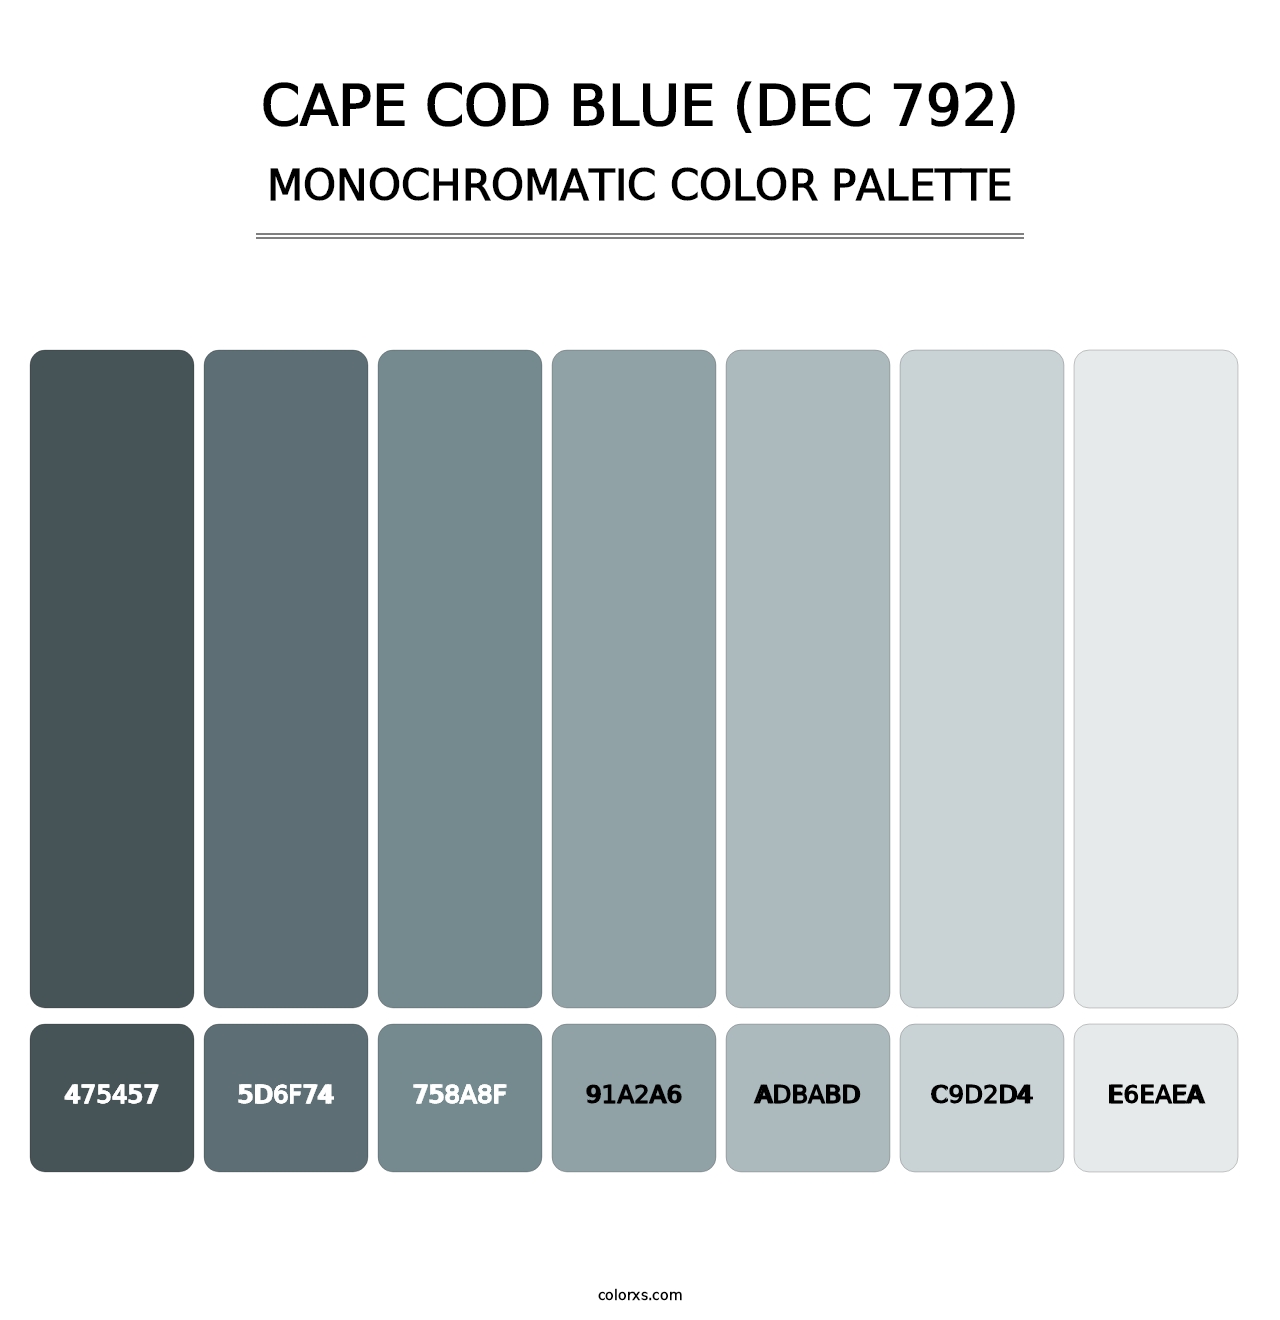 Cape Cod Blue (DEC 792) - Monochromatic Color Palette